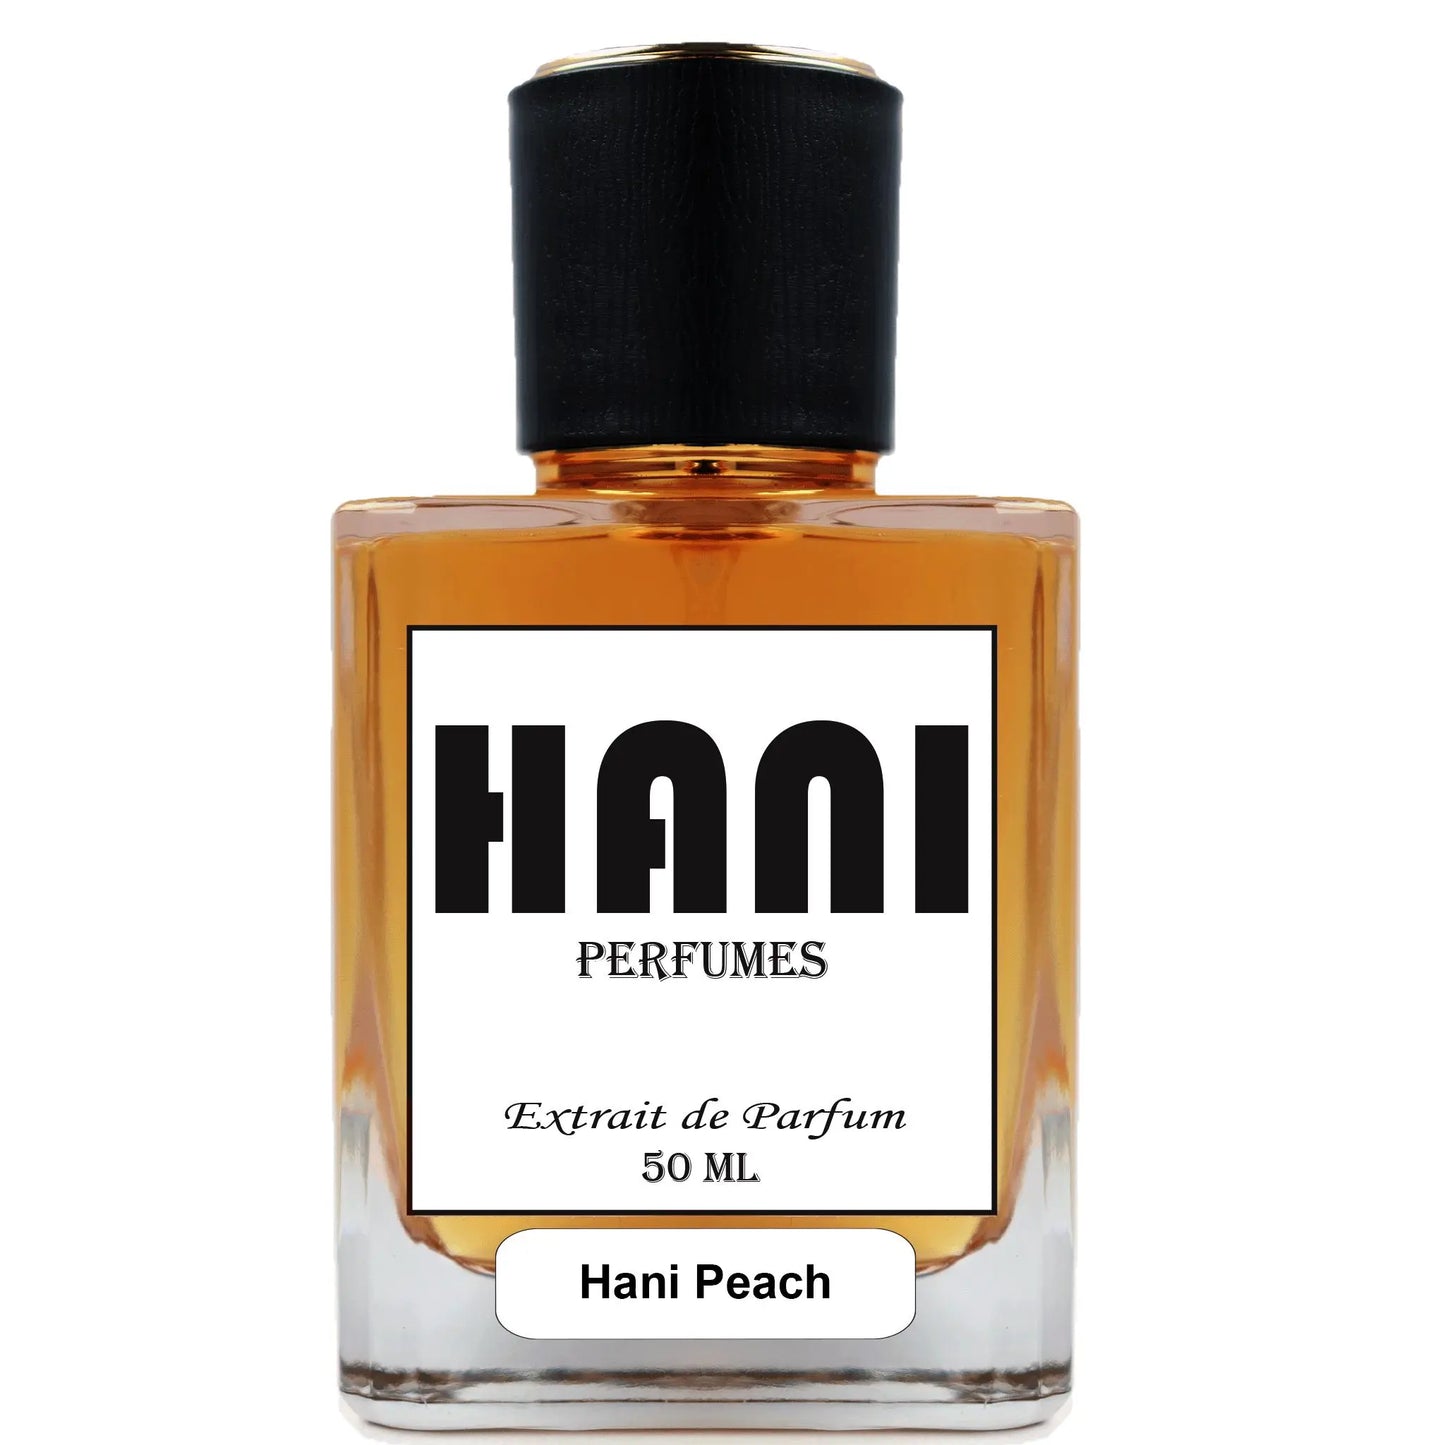 Hani Peach Unisex Parfum duftzwilling parfum dupe